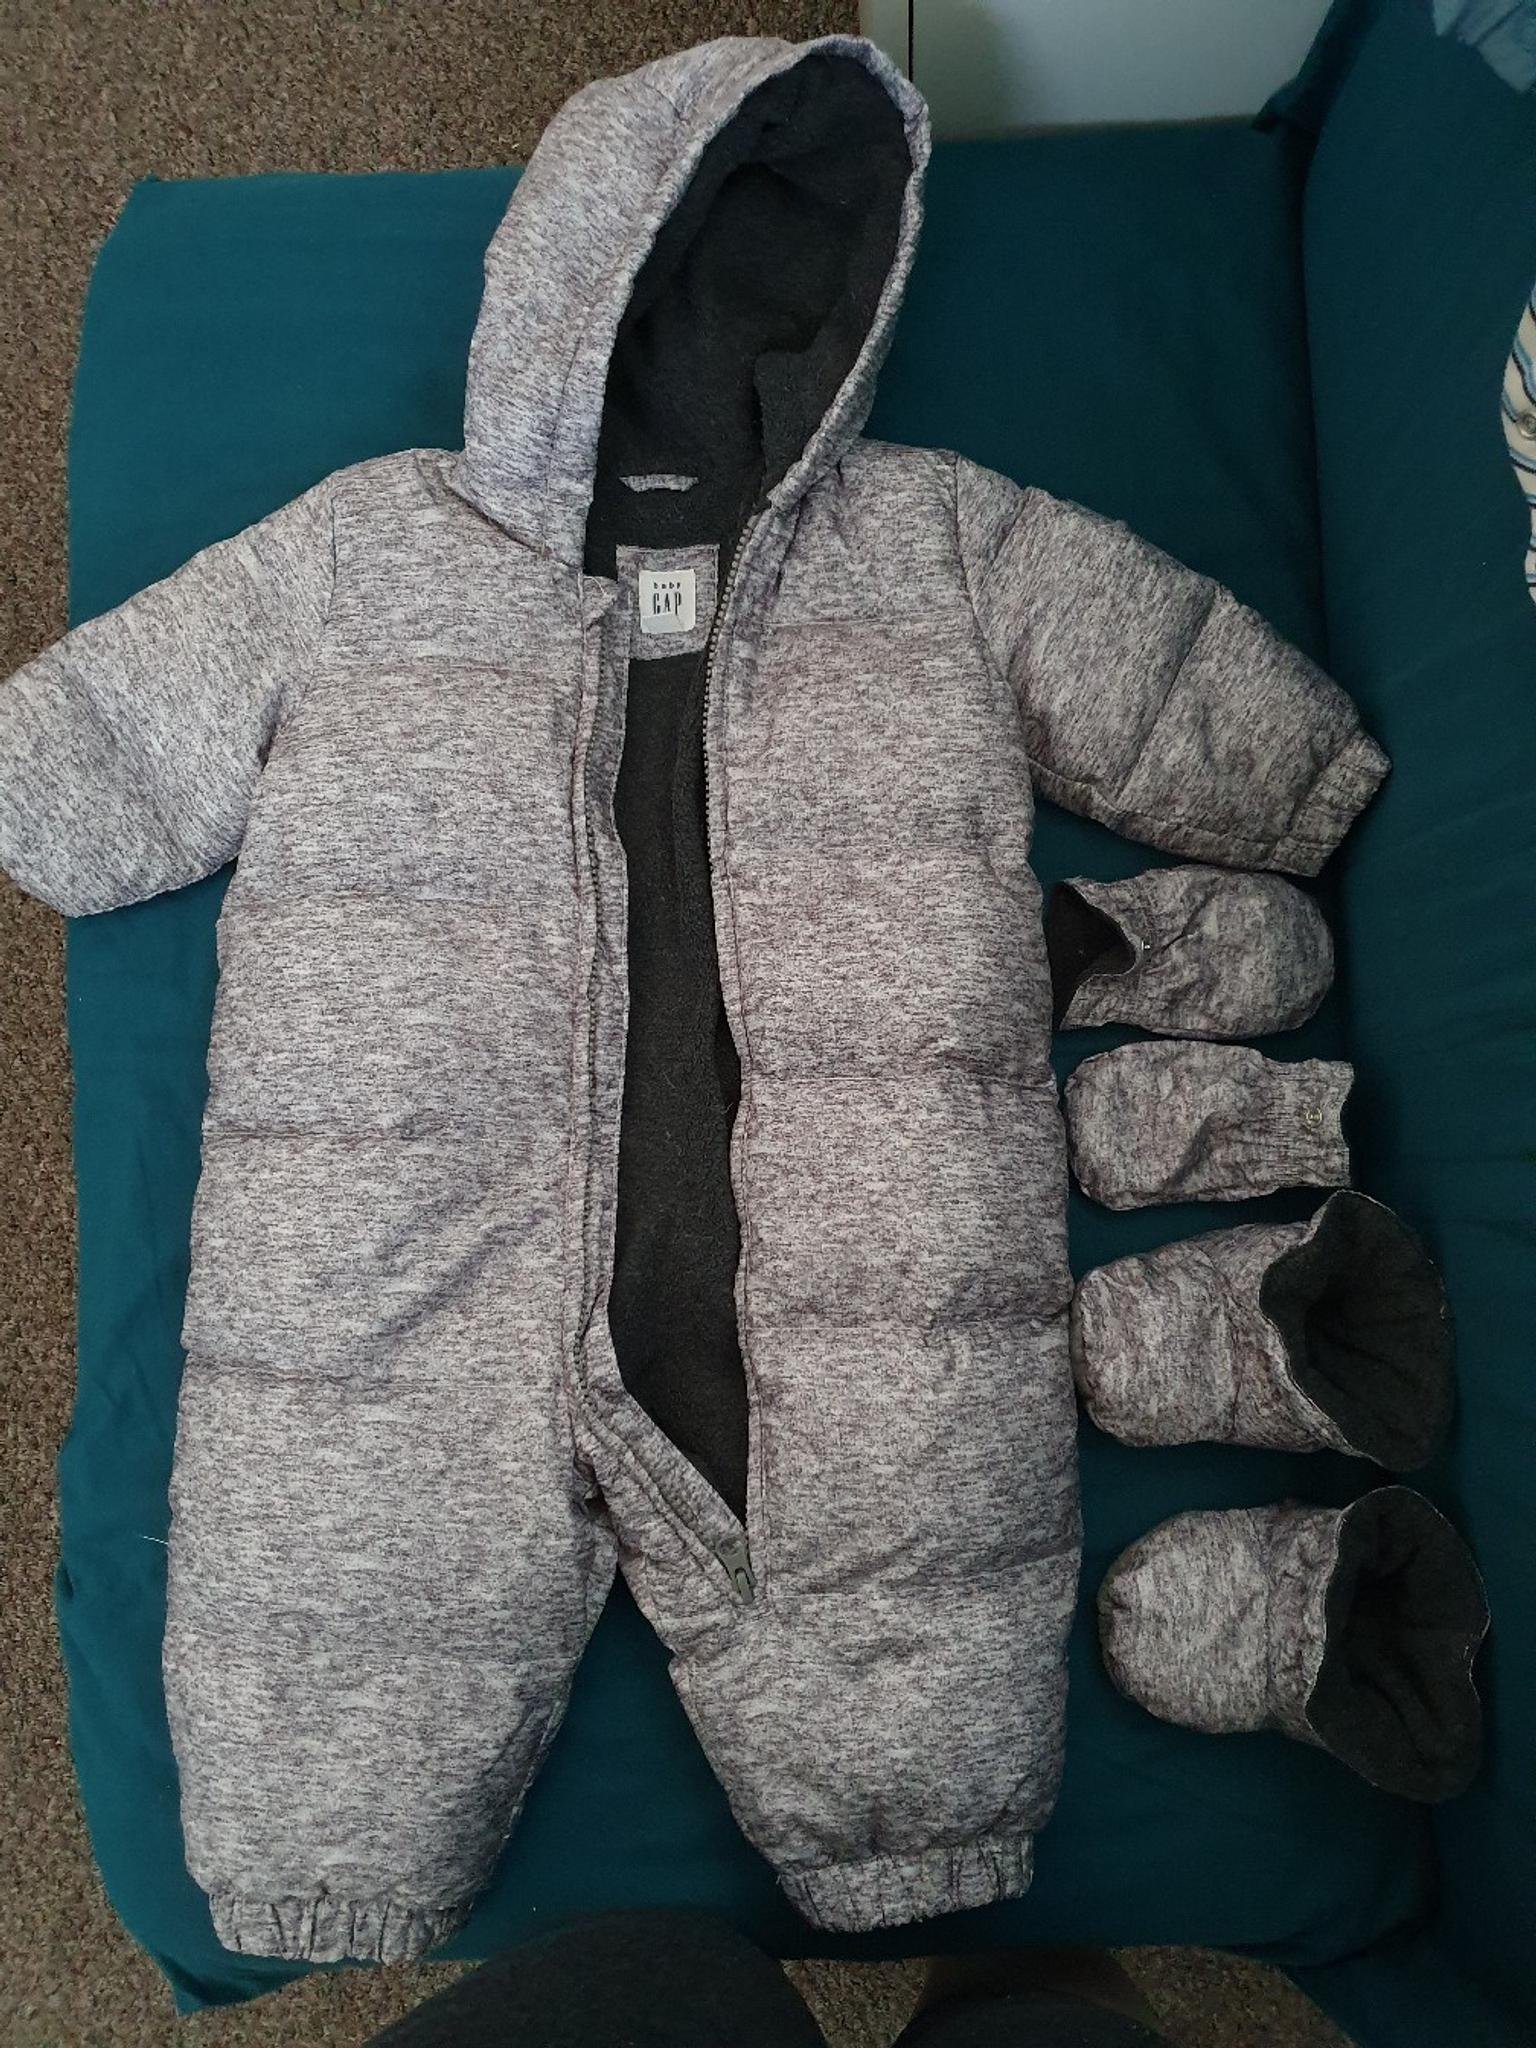 gap infant snowsuit